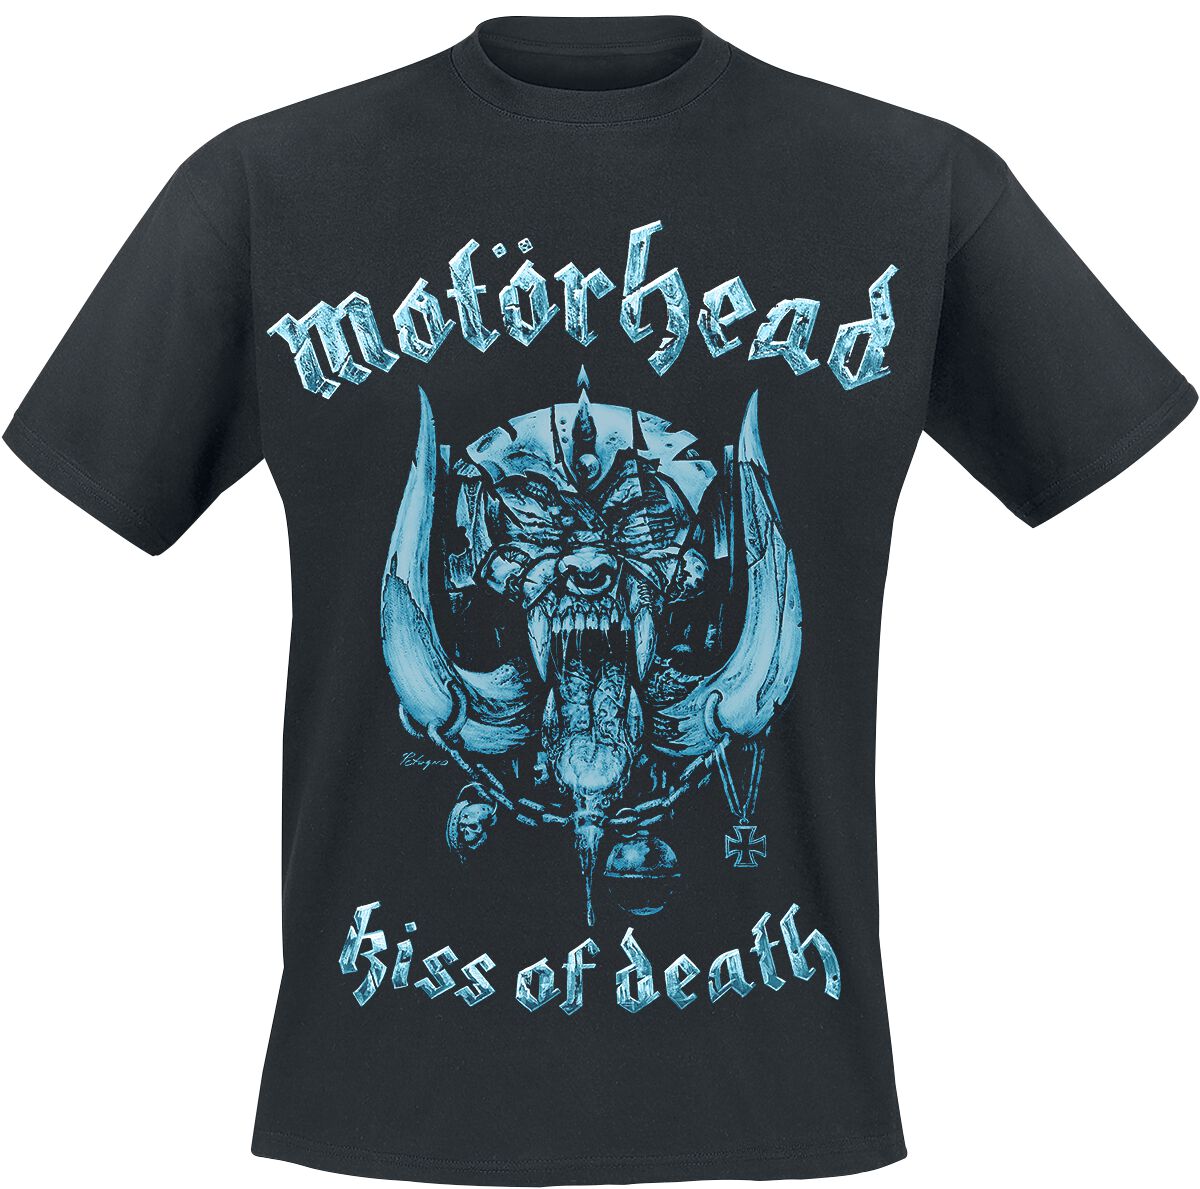 Motörhead T-Shirt - Kiss Of Death Warpig Cut Out - S bis XXL - für Männer - Größe XXL - schwarz  - Lizenziertes Merchandise!